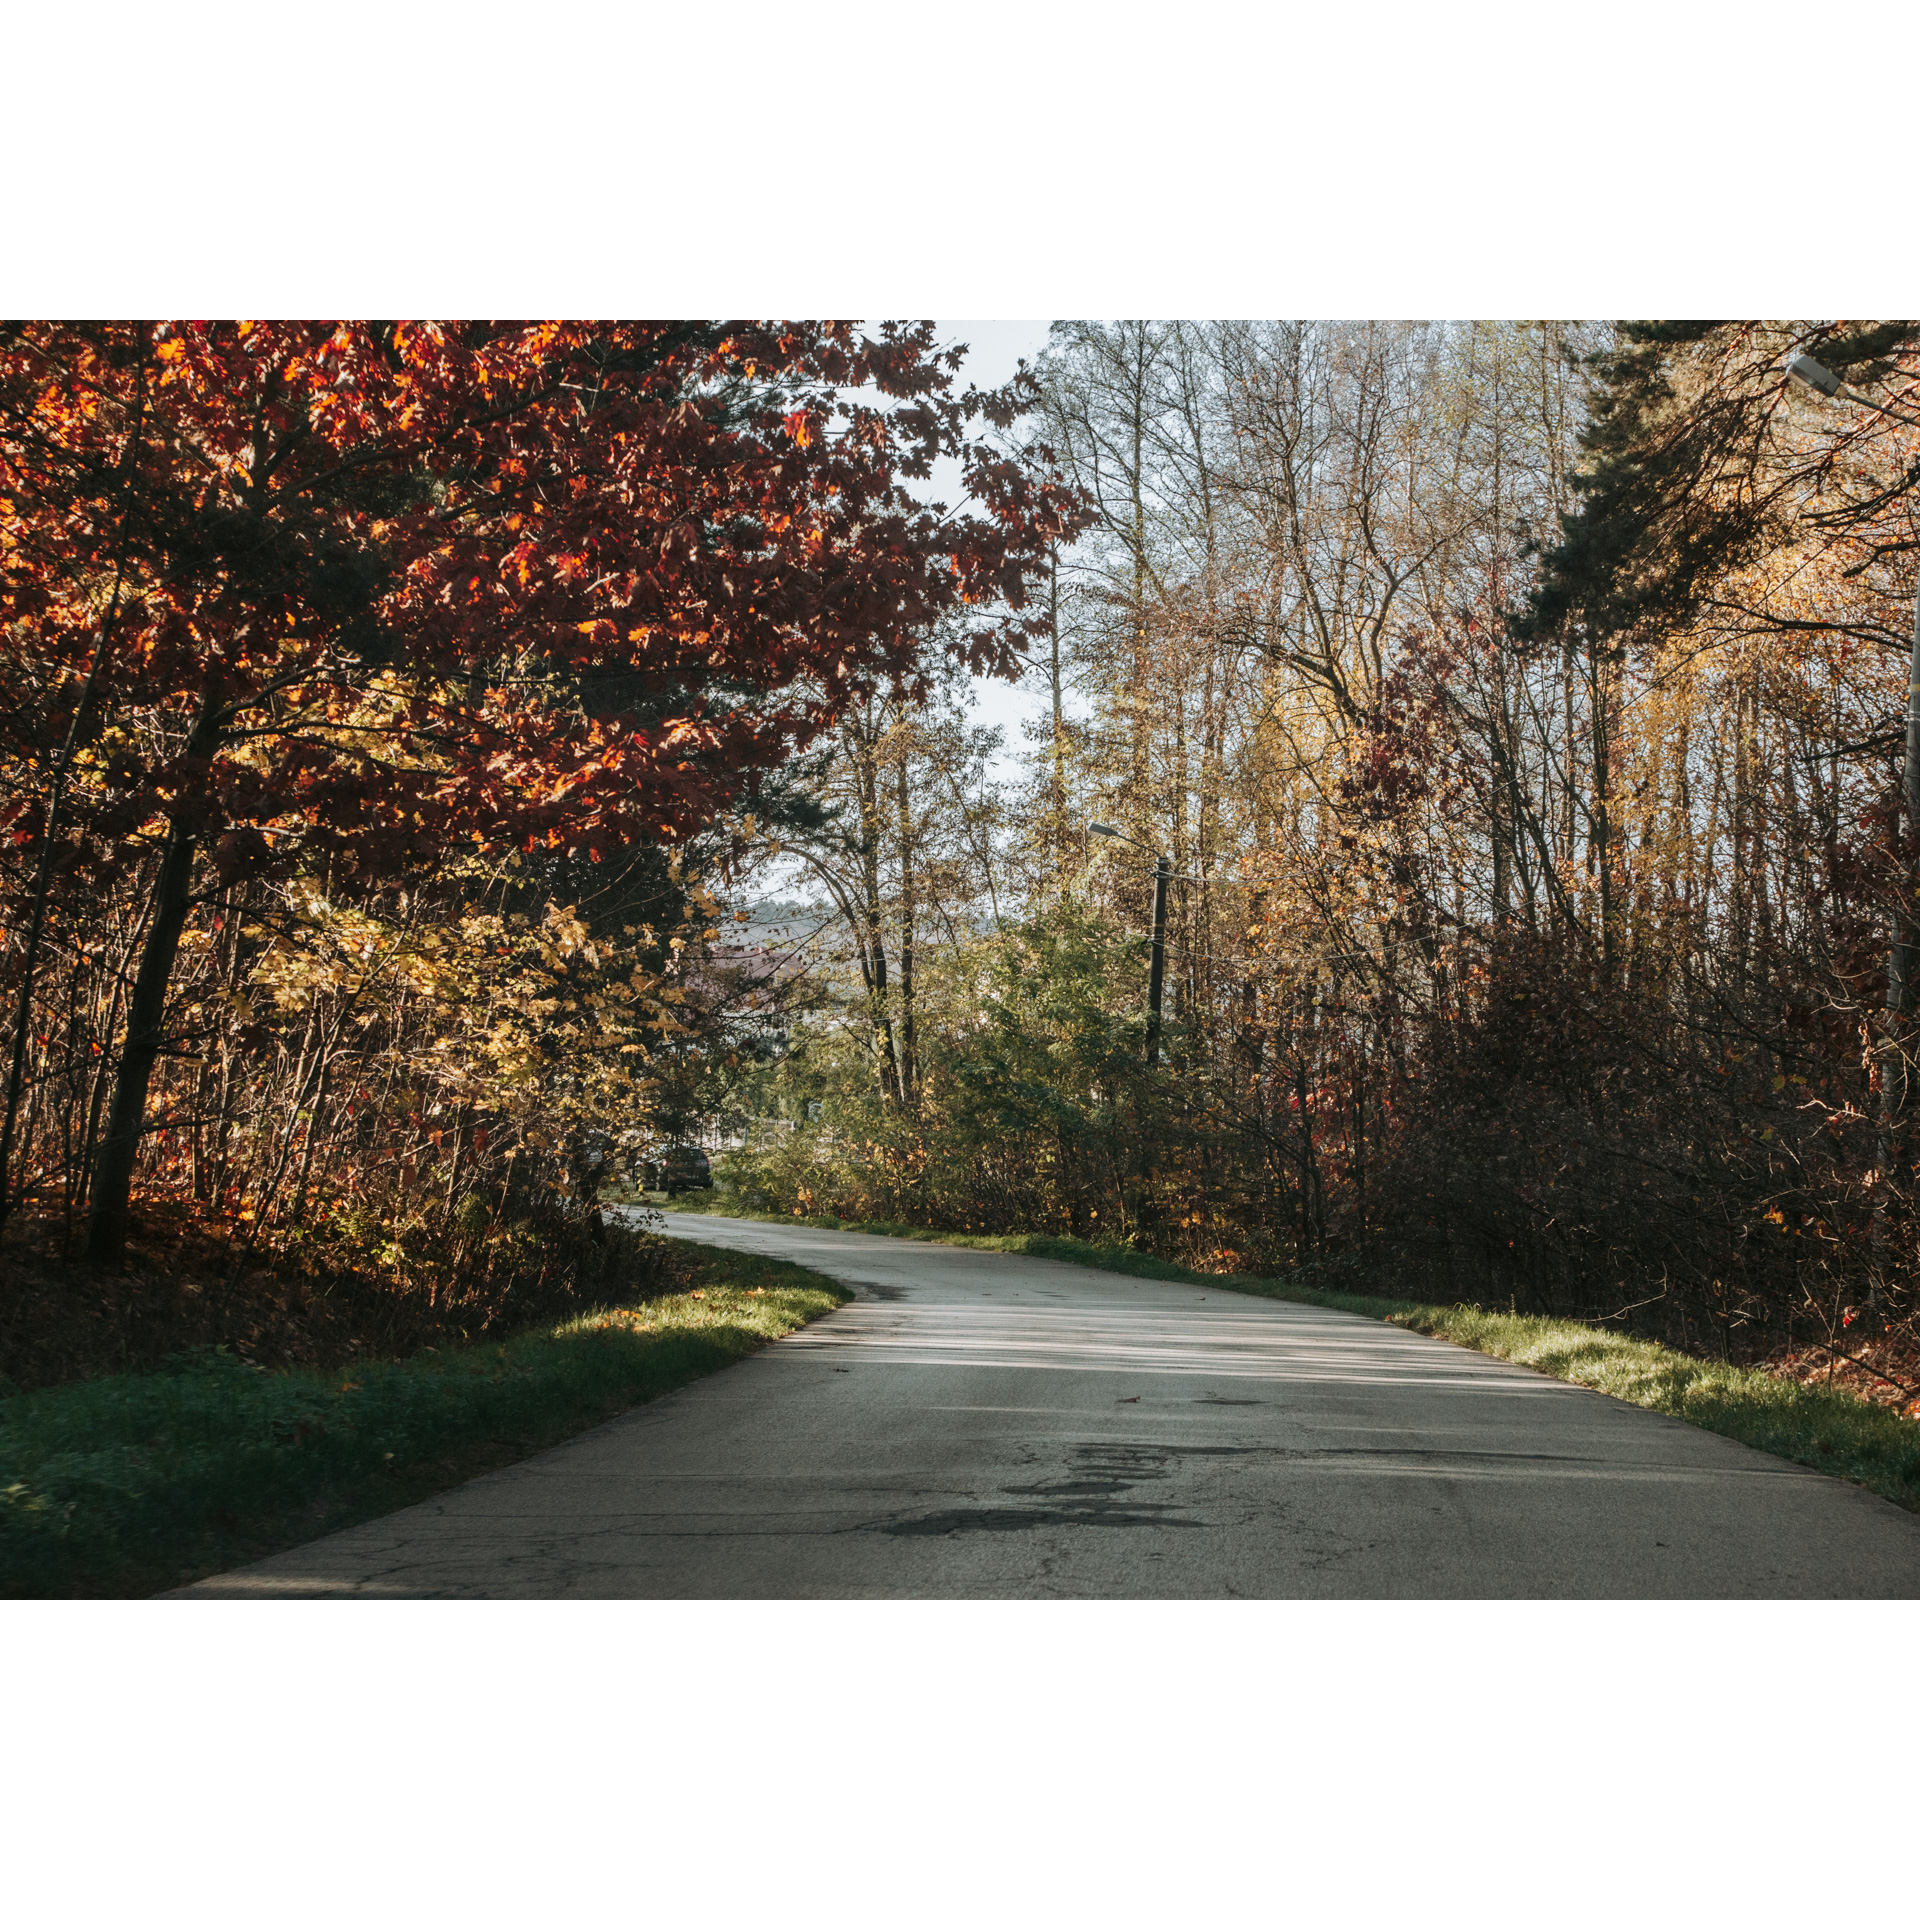 Droga asfaltowa skręcająca w lewo prowadząca przez jesienny las